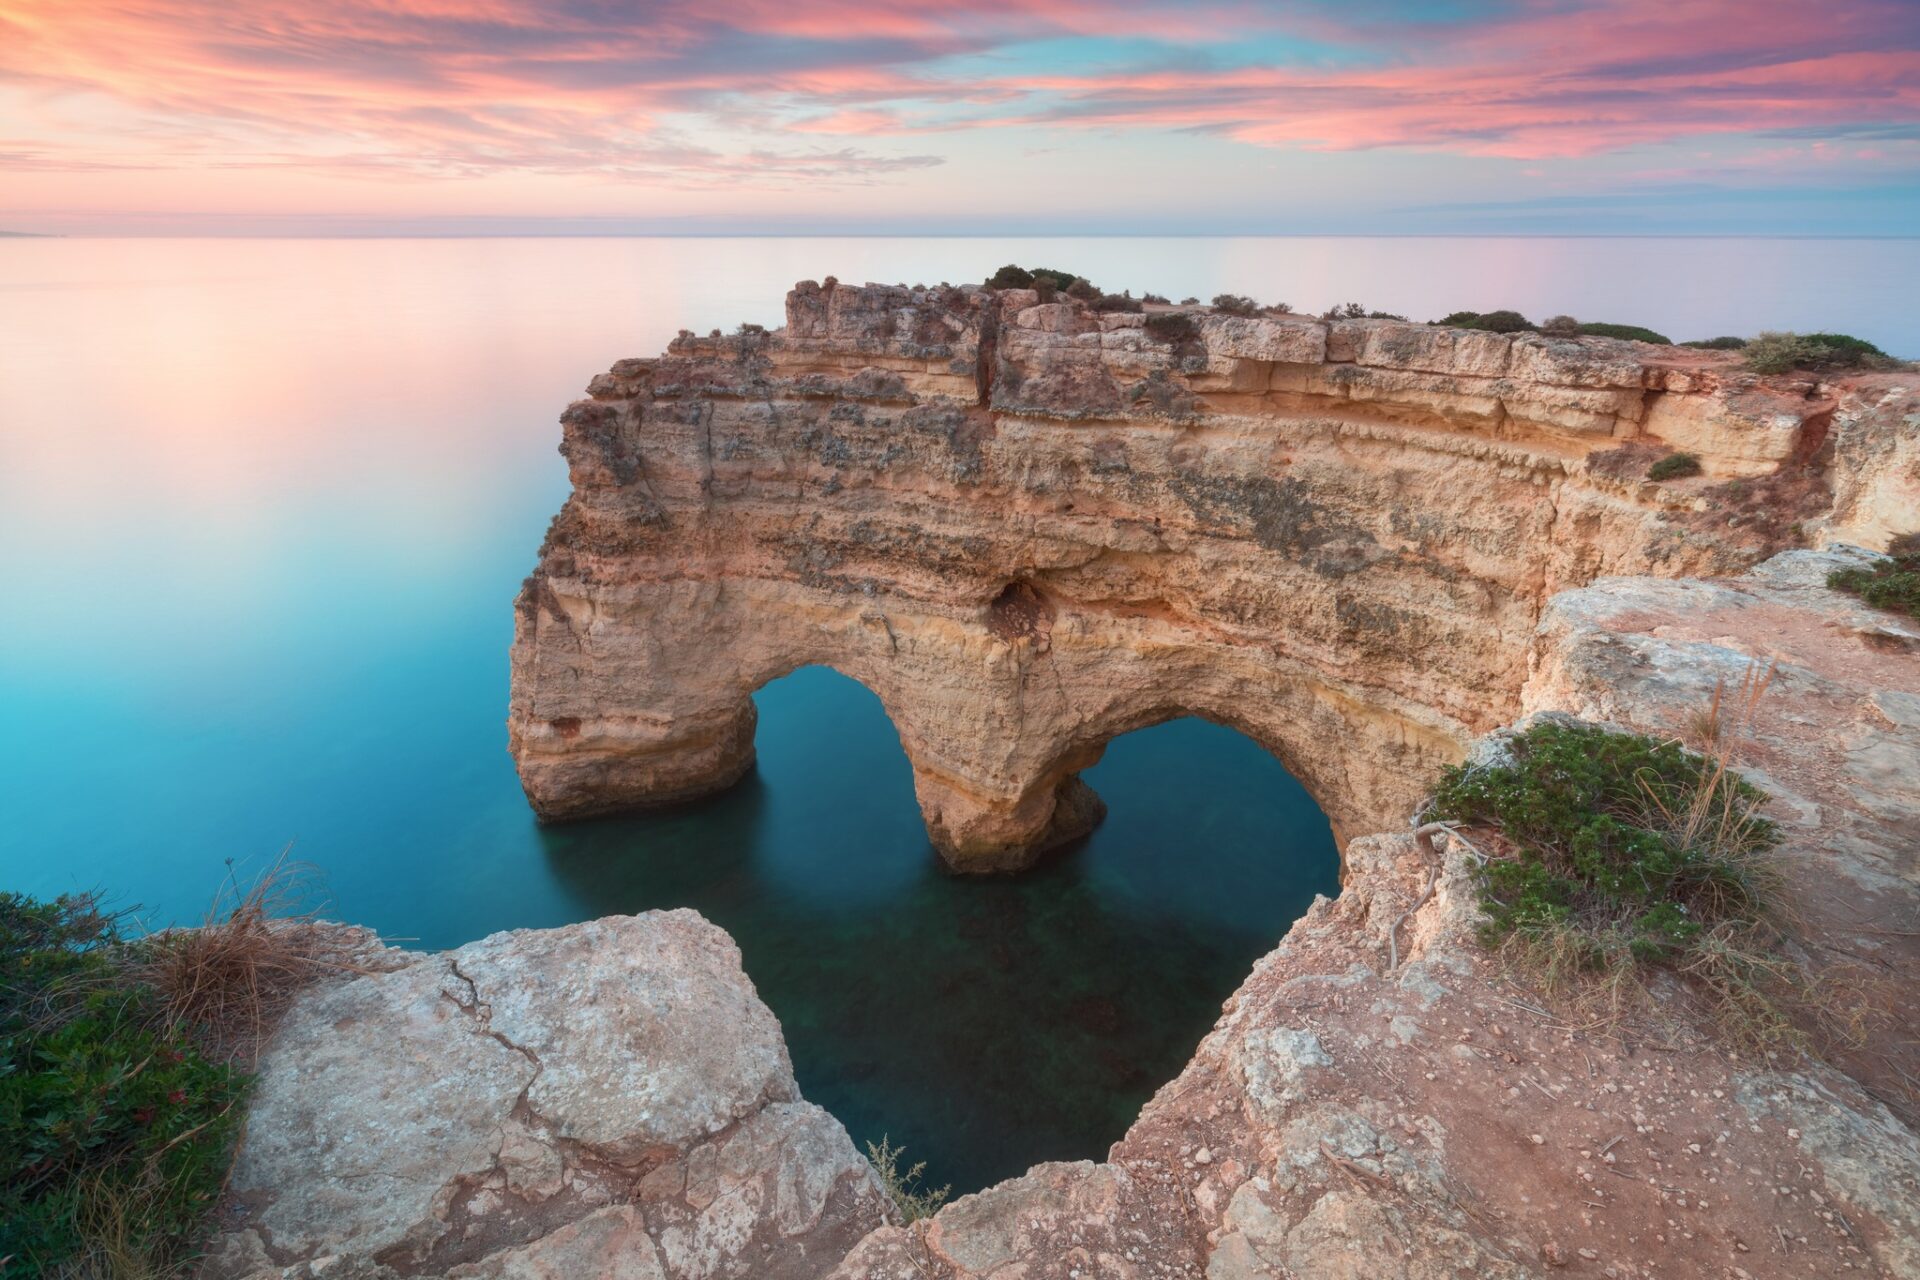 Algarve Caves in Portugal